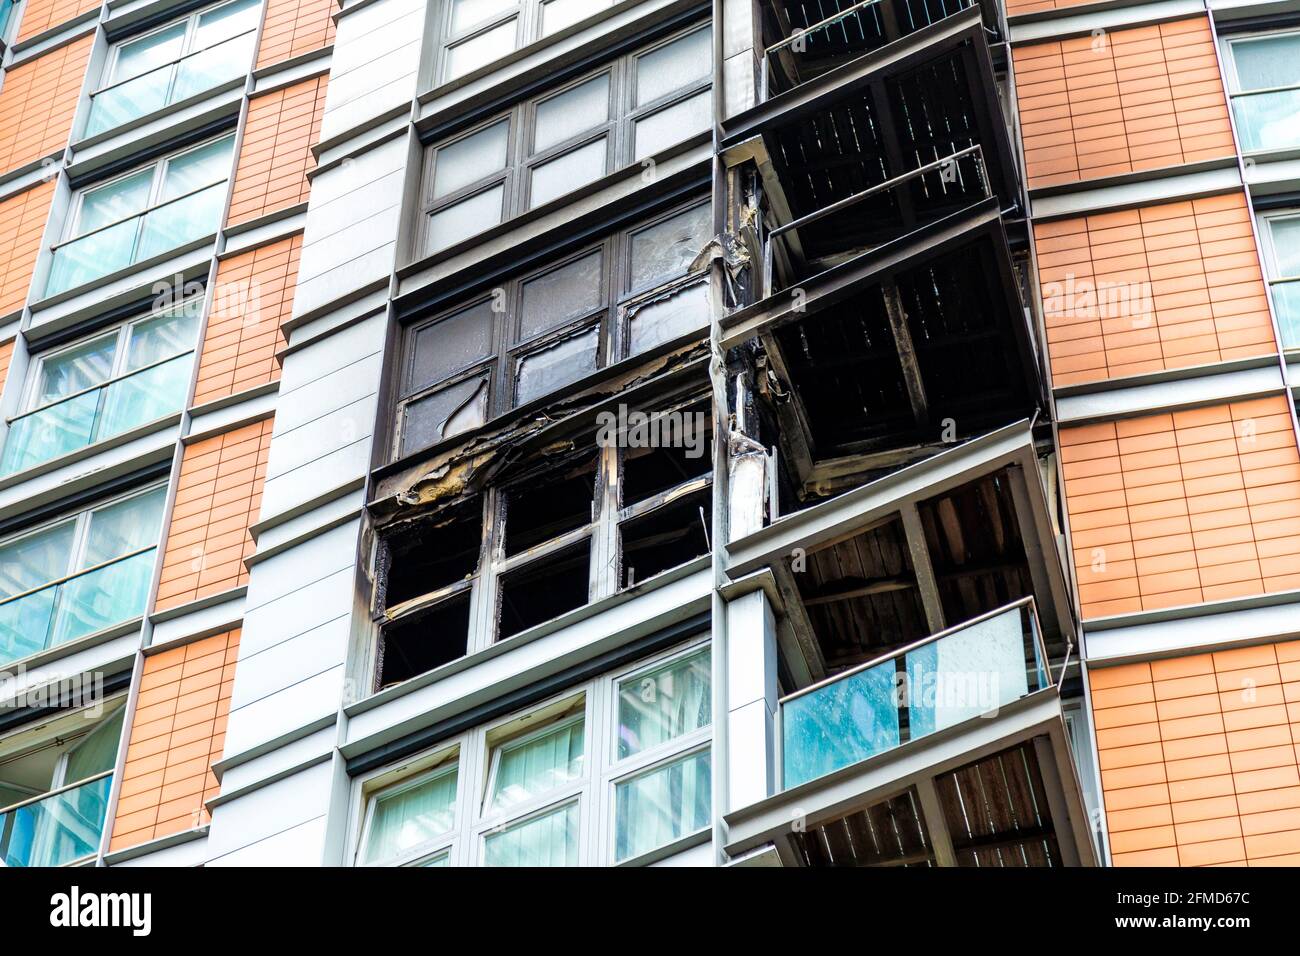 8. Mai 2021, London, Großbritannien - Fassade der New Providence Wharf nach einem Großbrand im Zusammenhang mit ACM-Verkleidungen (gleicher Typ wie bei der Katastrophe im Grenfell Tower), Poplar in der Nähe von Canary Wharf, gelöscht Stockfoto